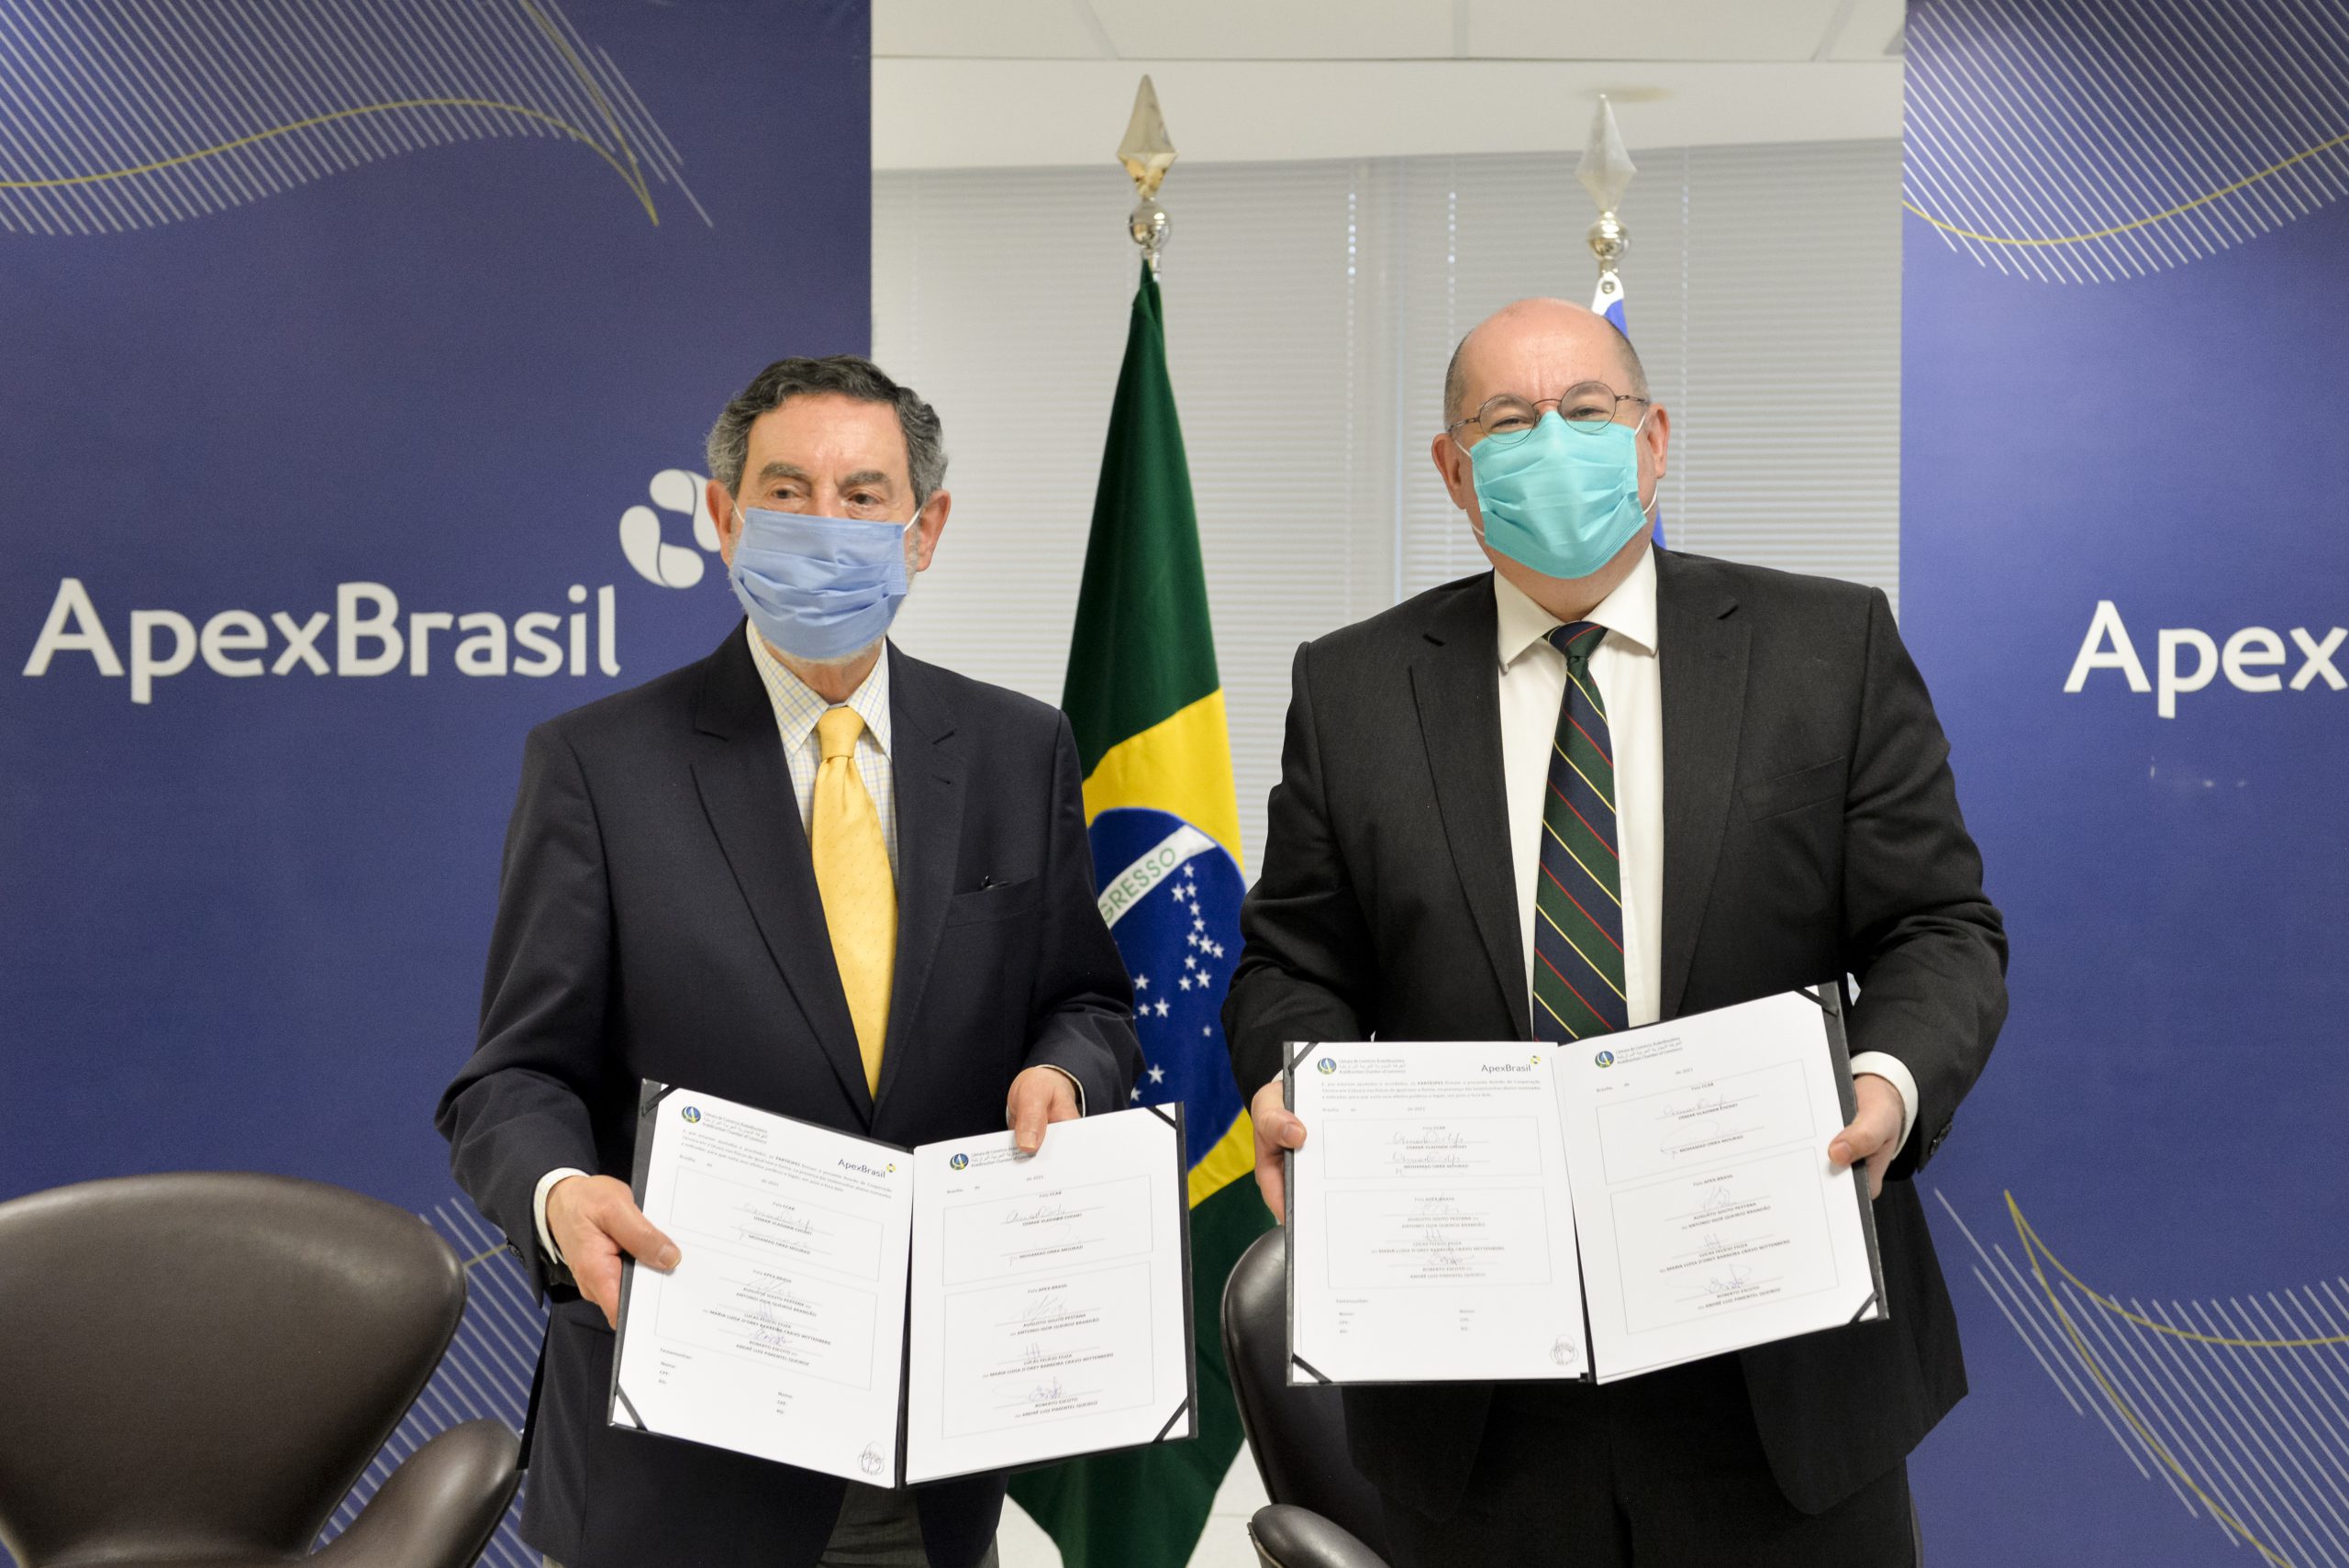 Apex-Brasil e Câmara de Comércio Árabe-Brasileira fecham acordo para ampliar relações comerciais entre Brasil e países árabes